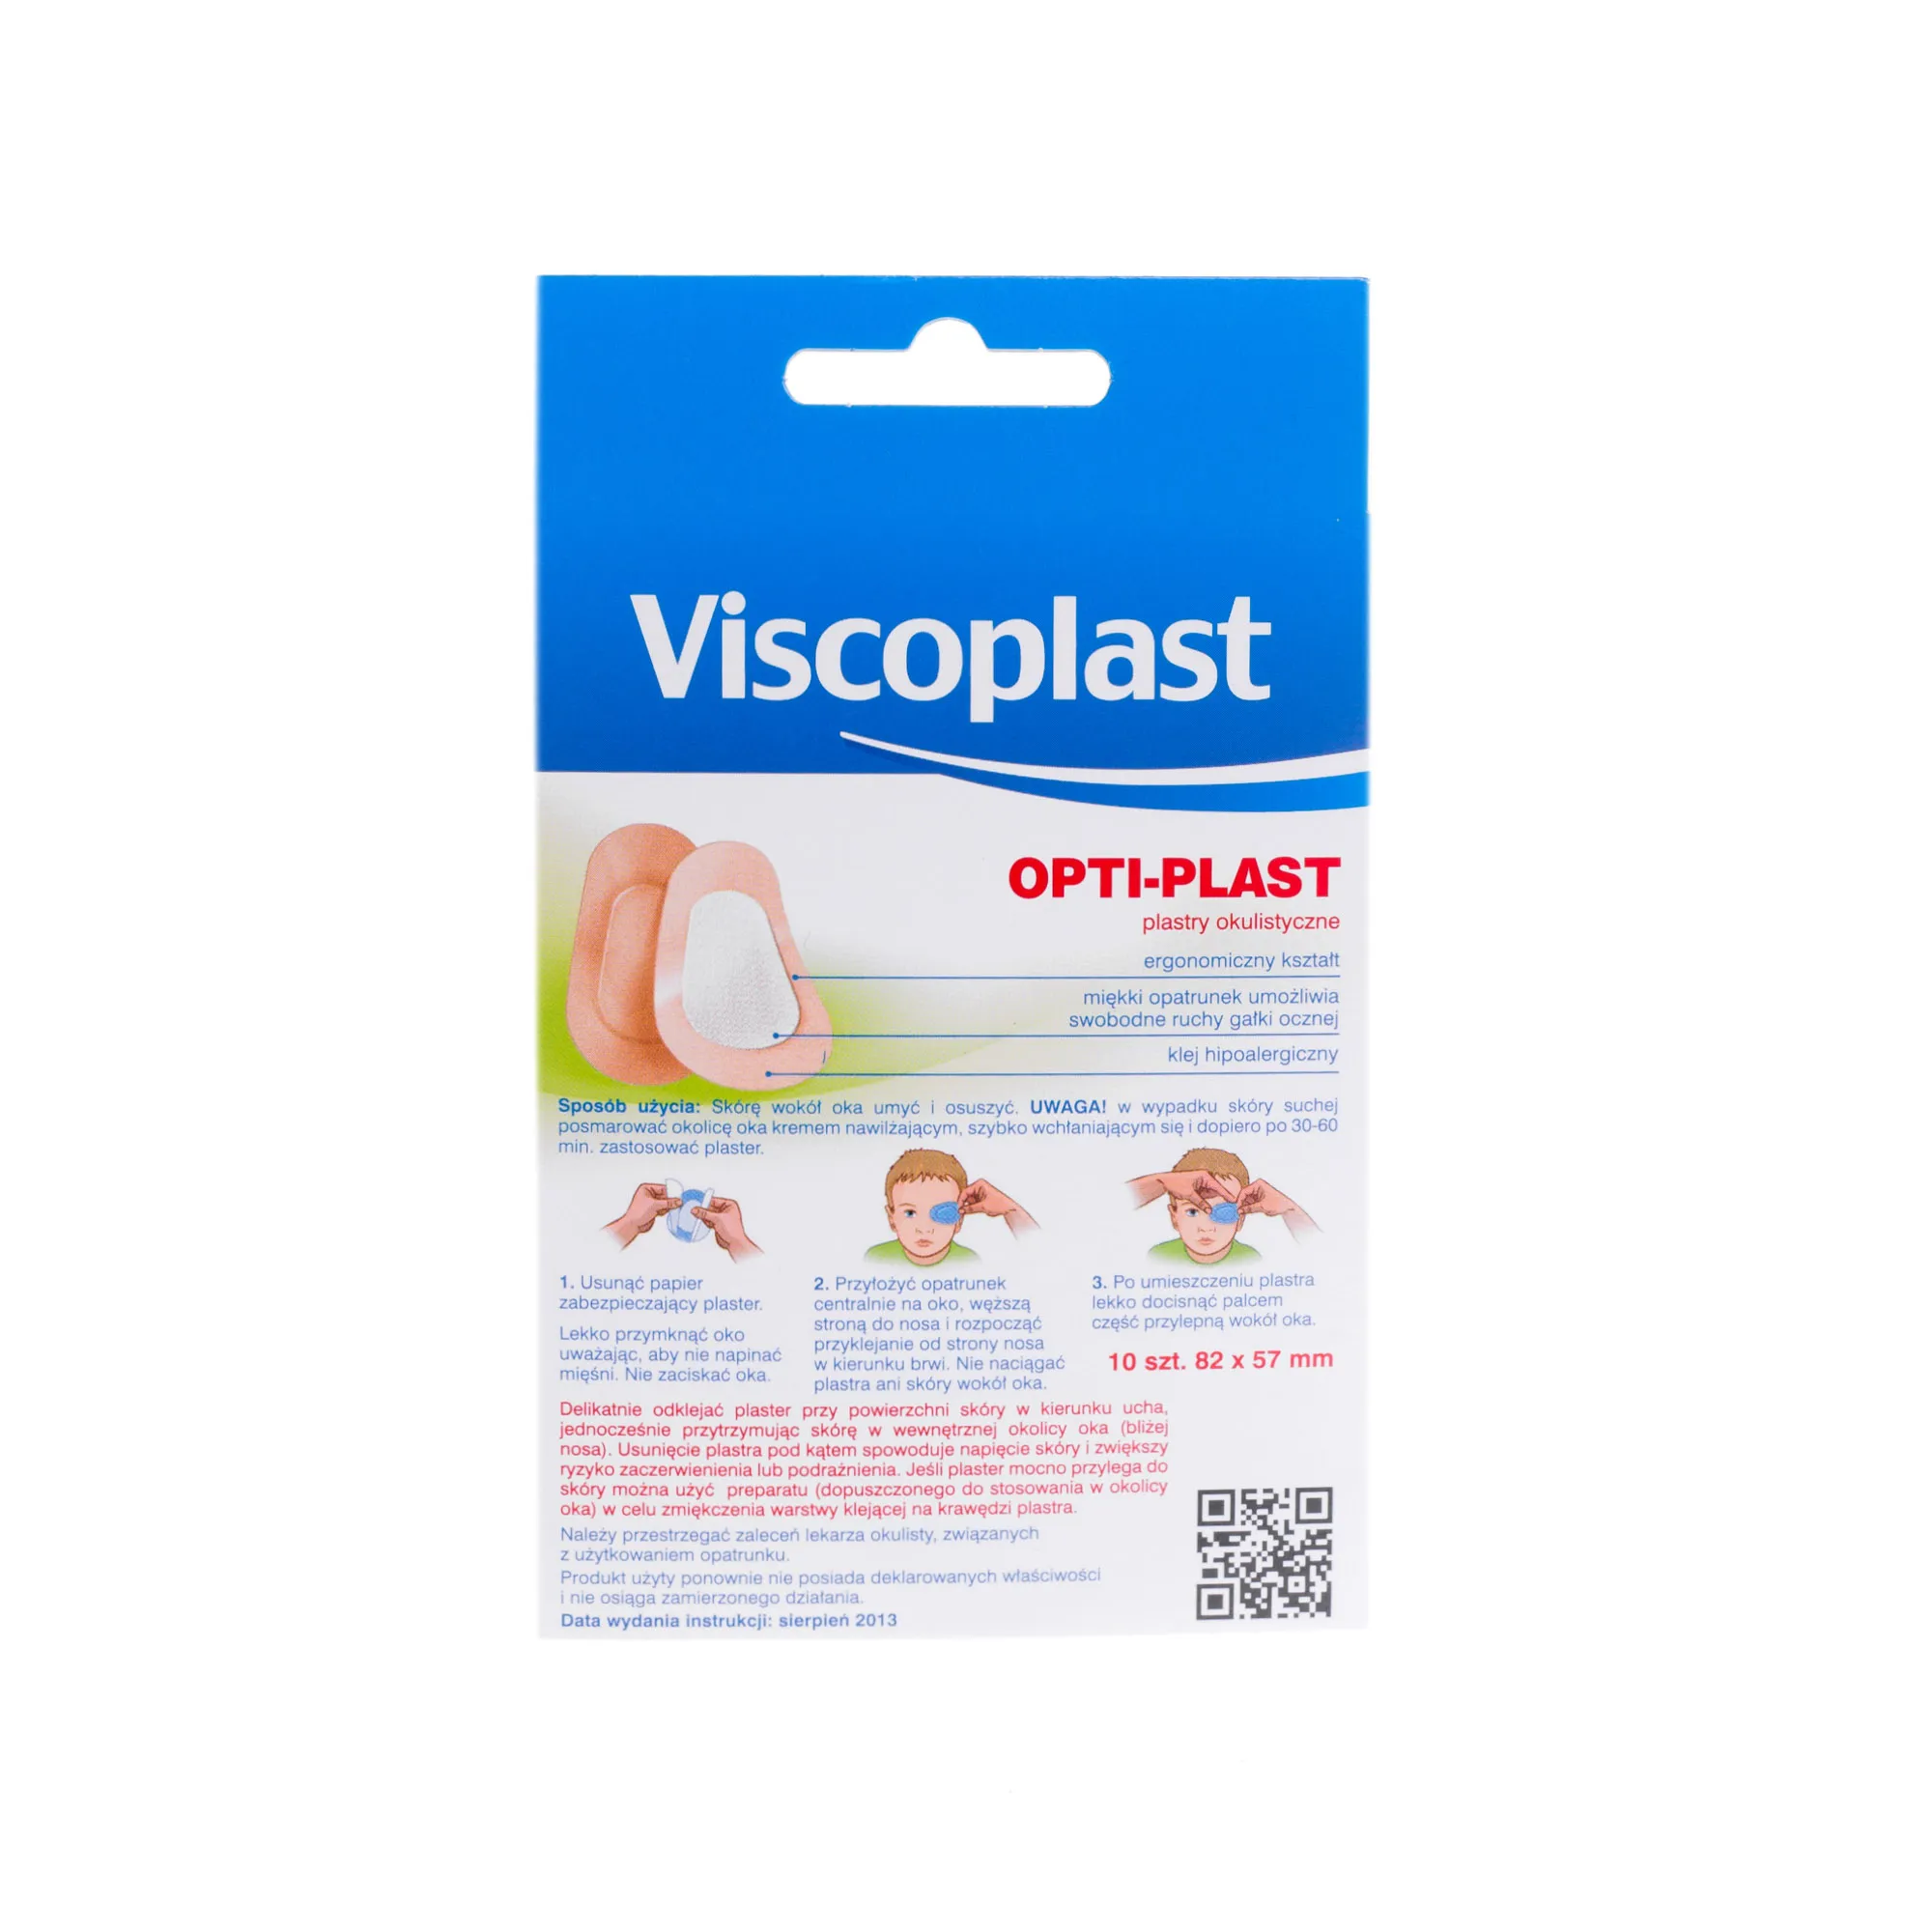 Viscoplast OPTI PLAST, plastry okulistyczne do korekcji wad wzroku, 10 sztuk, 82 x 57 mm 